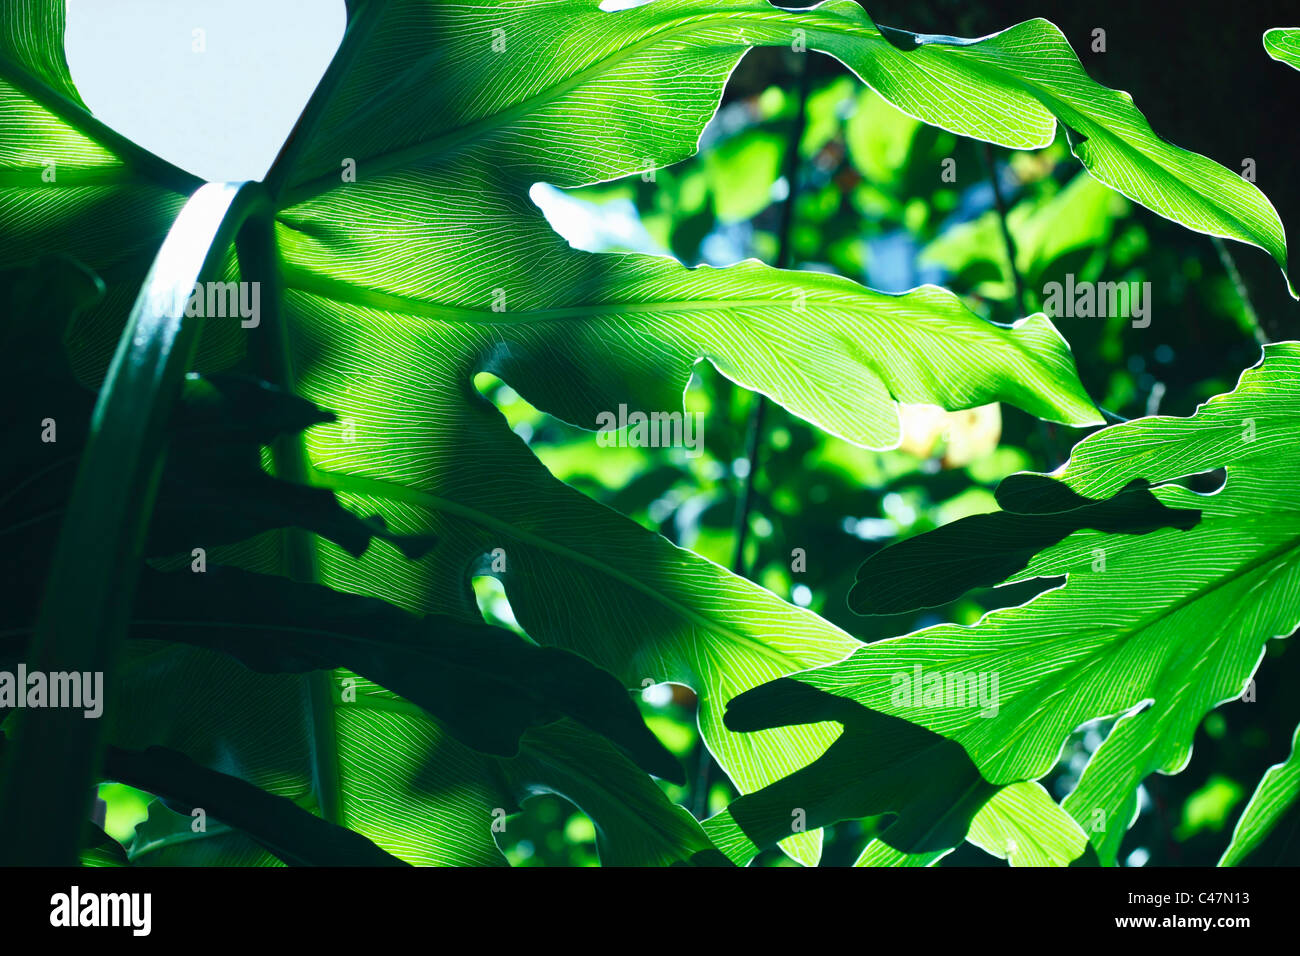 Resumen de hojas de filodendro retroiluminado en alto contraste destacando la red de venas en la hoja. Familia: Araceae, Género: Foto de stock